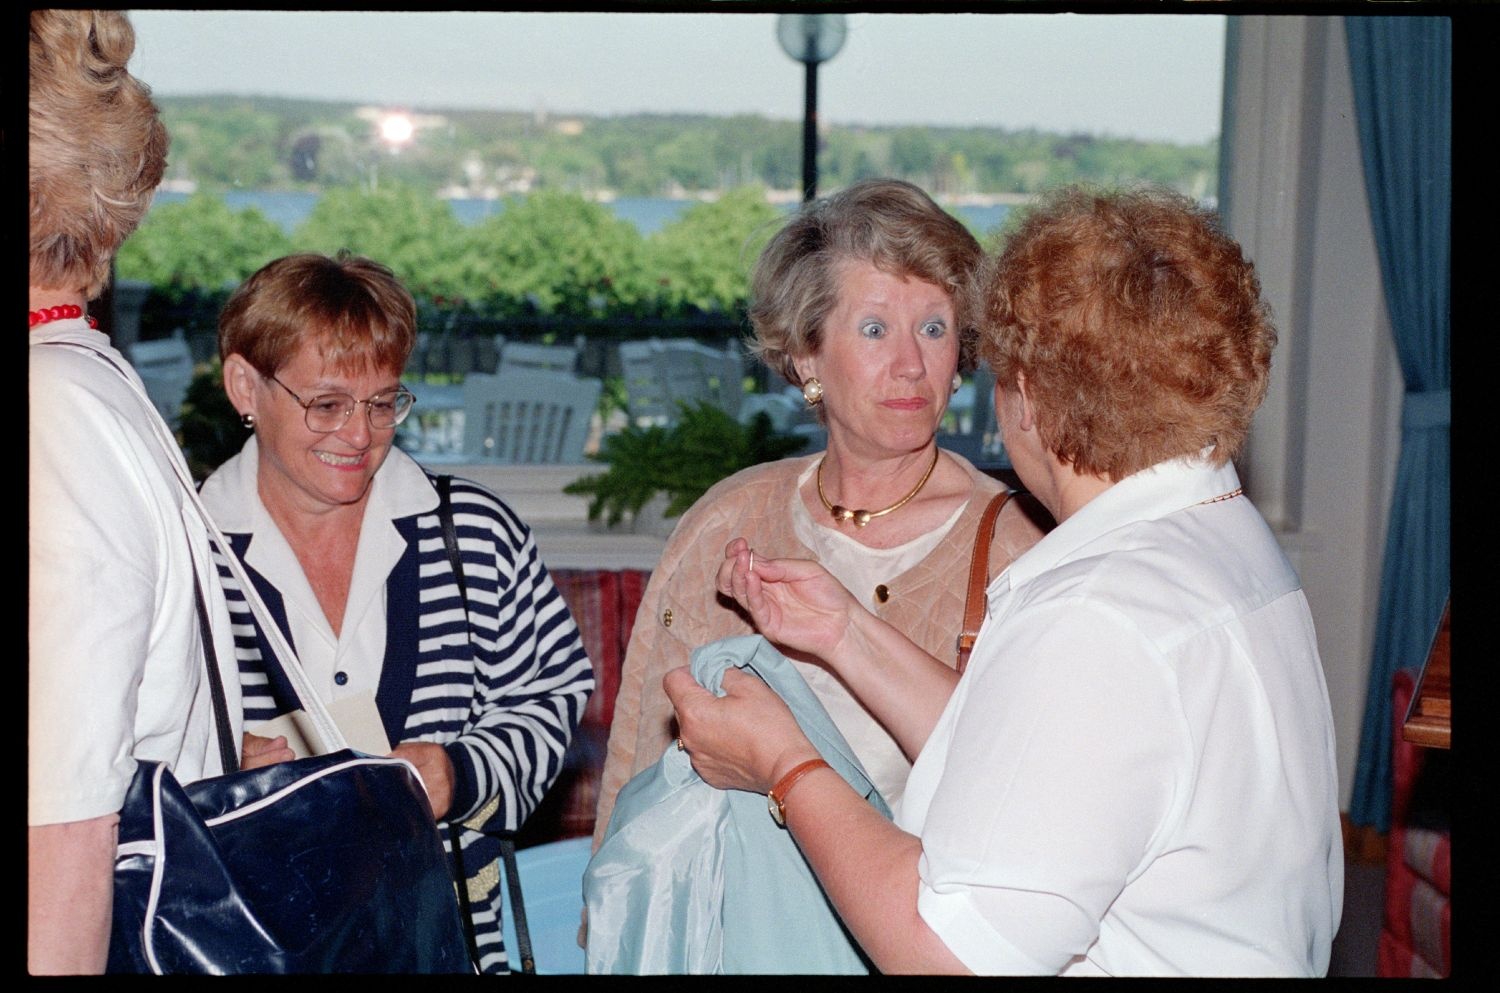 Fotografie: "Allied Wives Meeting", Ausflug mit dem Schiff für Ehefrauen der britischen, französischen und US-Community in Berlin-Wannsee